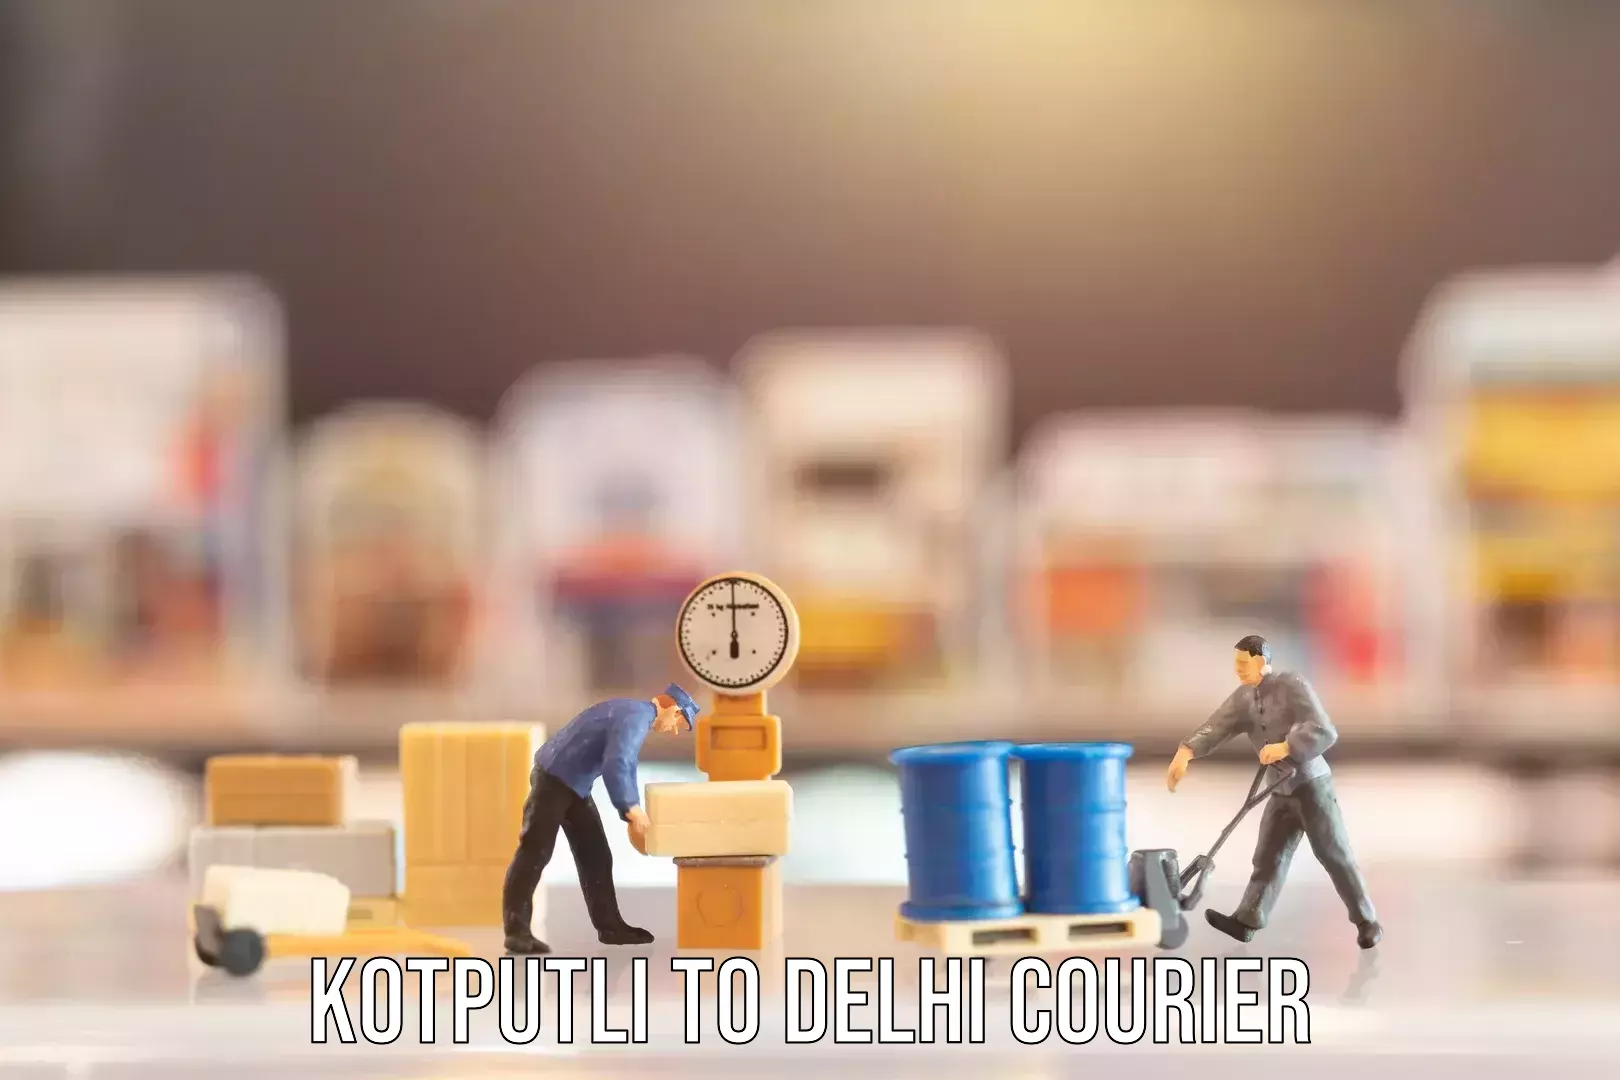 Urban luggage shipping Kotputli to Jamia Millia Islamia New Delhi